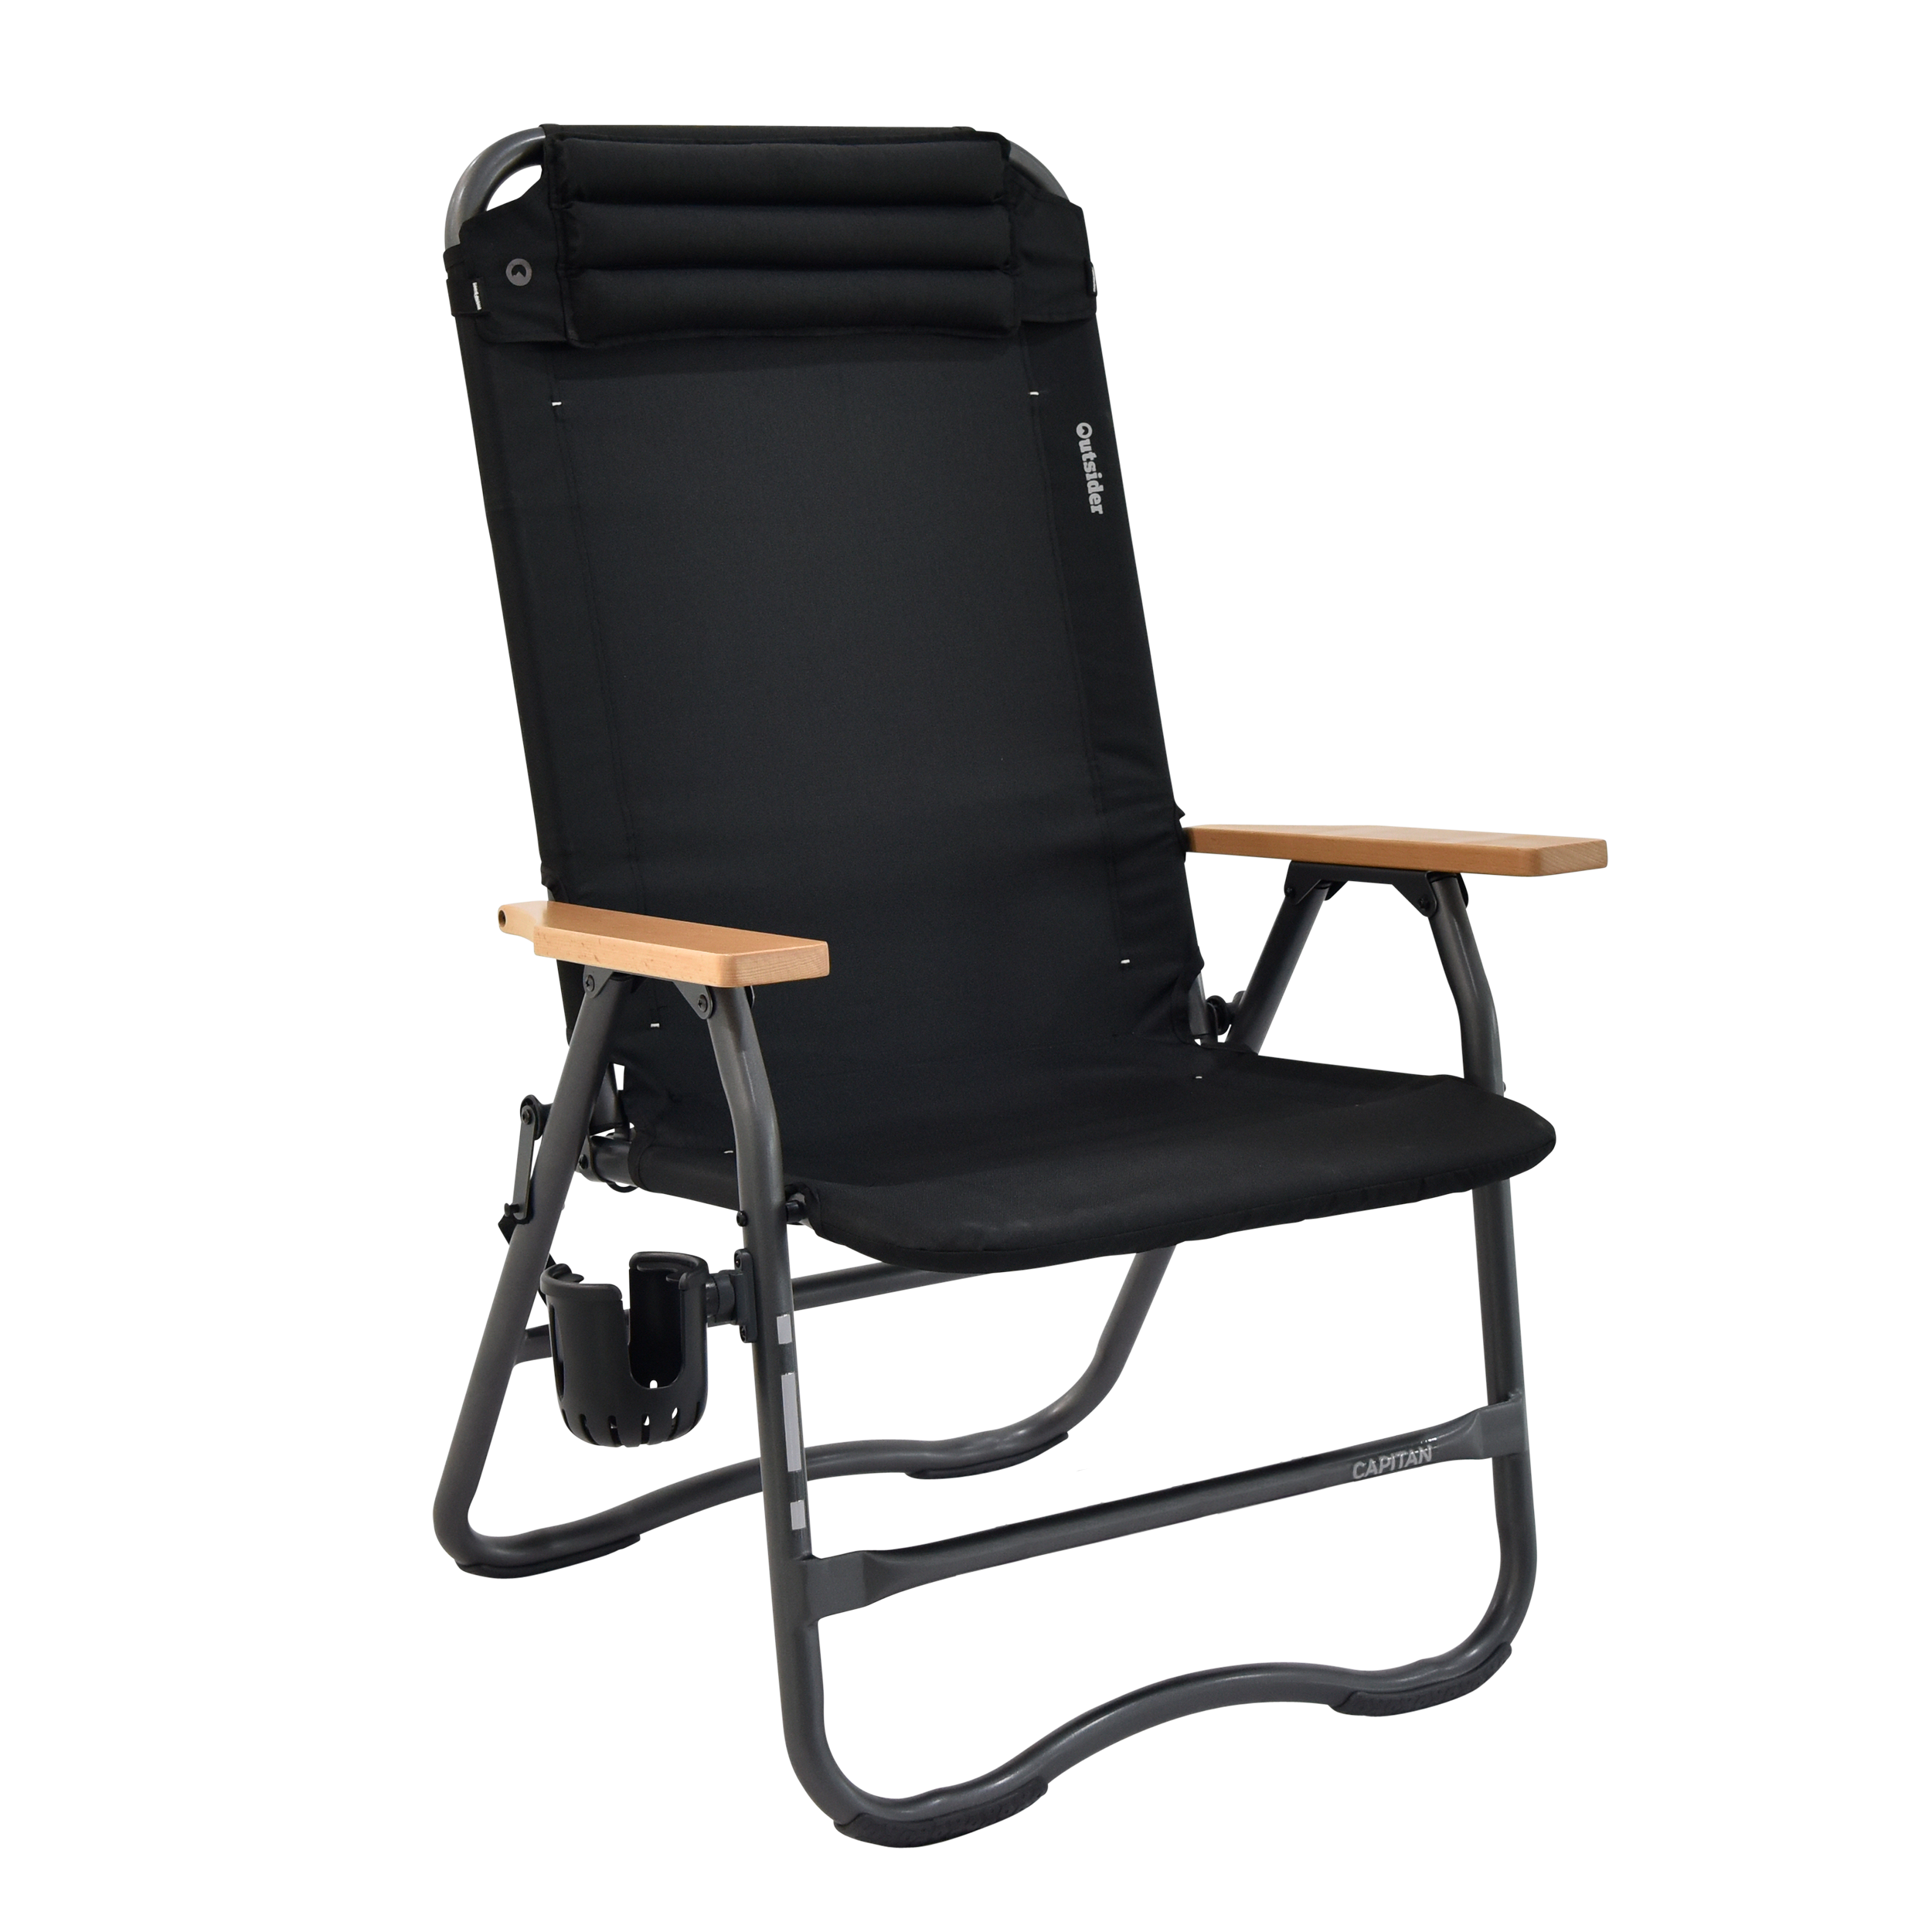 Outsider Capitan Camp Chair